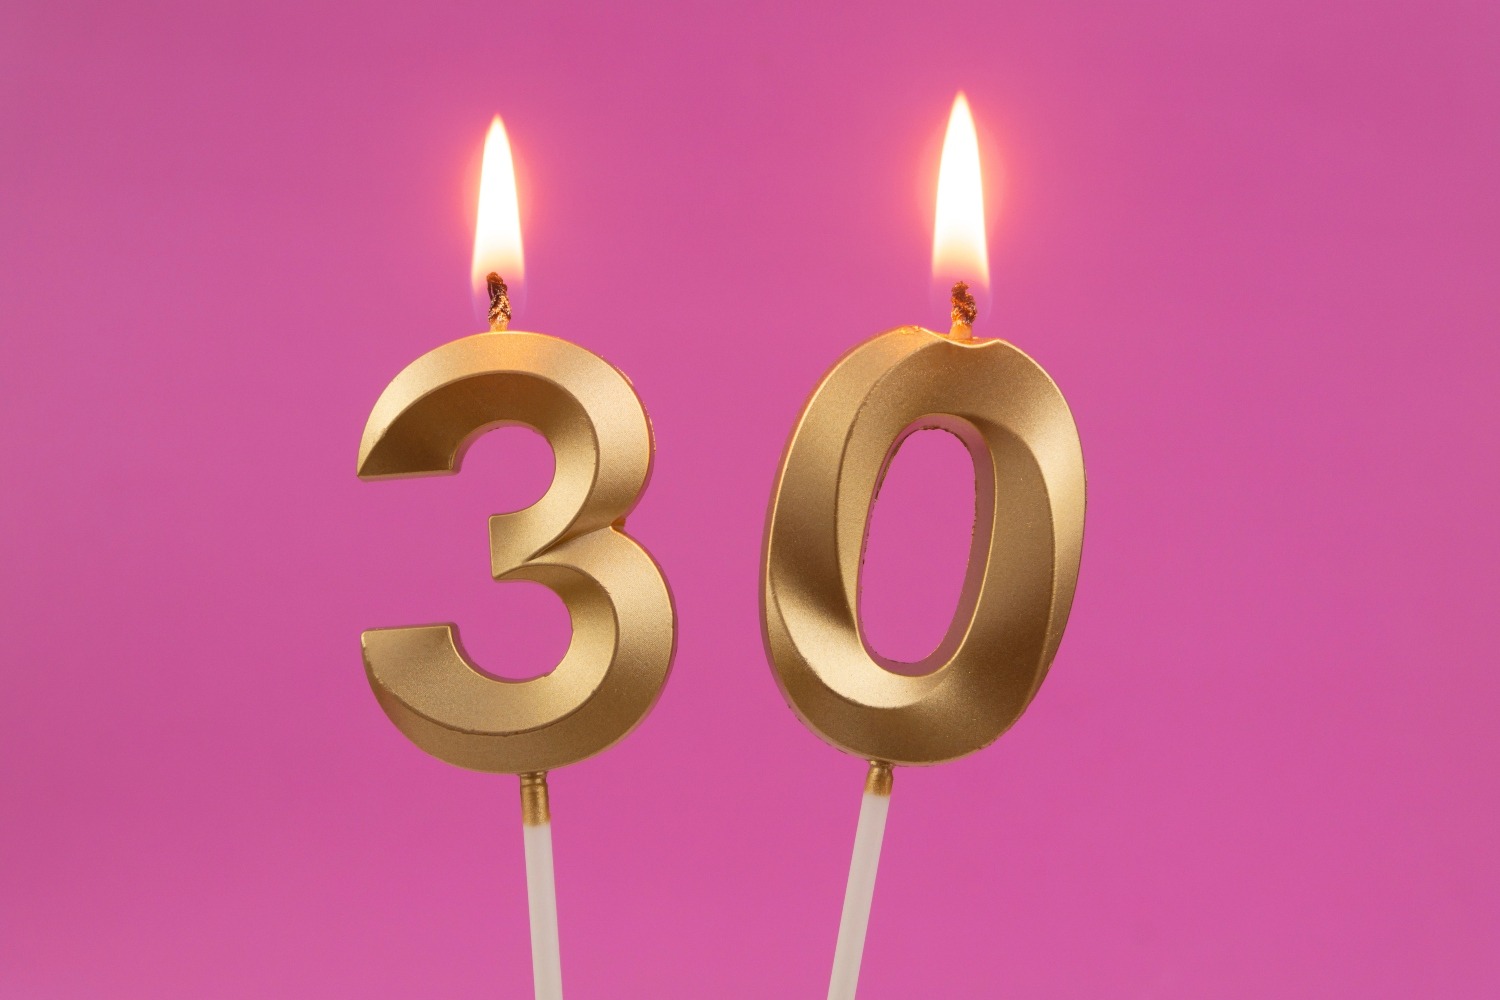 Joyeux Anniversaire ~ 30 ans: Livre d'Or pour le 30ème anniversaire - 30  ans décoration & cadeau d'anniversaire pour homme ou femme - livre pour les